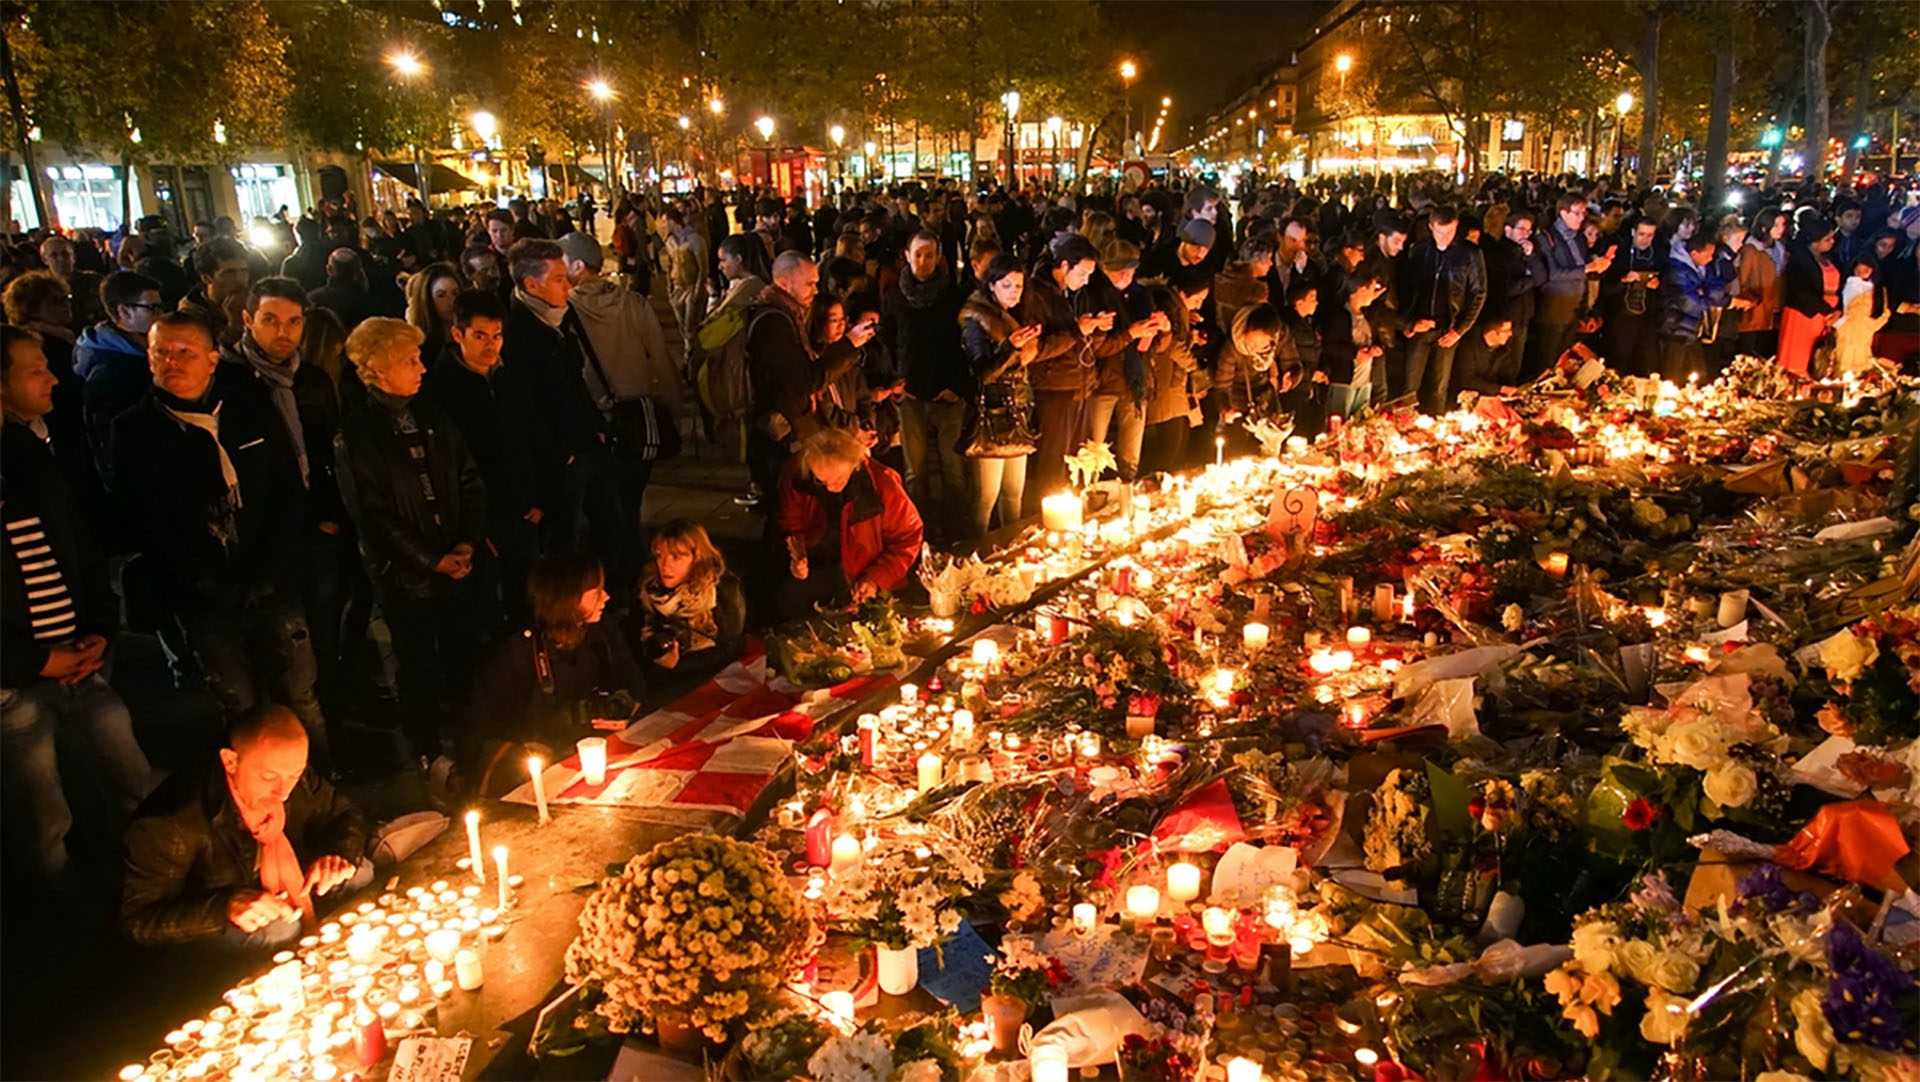 Hommage aux victimes sur la Place de la République à Paris en novembre 2015. (Photo: Wikimedia Commons/Mstyslav Chernov/CC BY-SA 4.0)